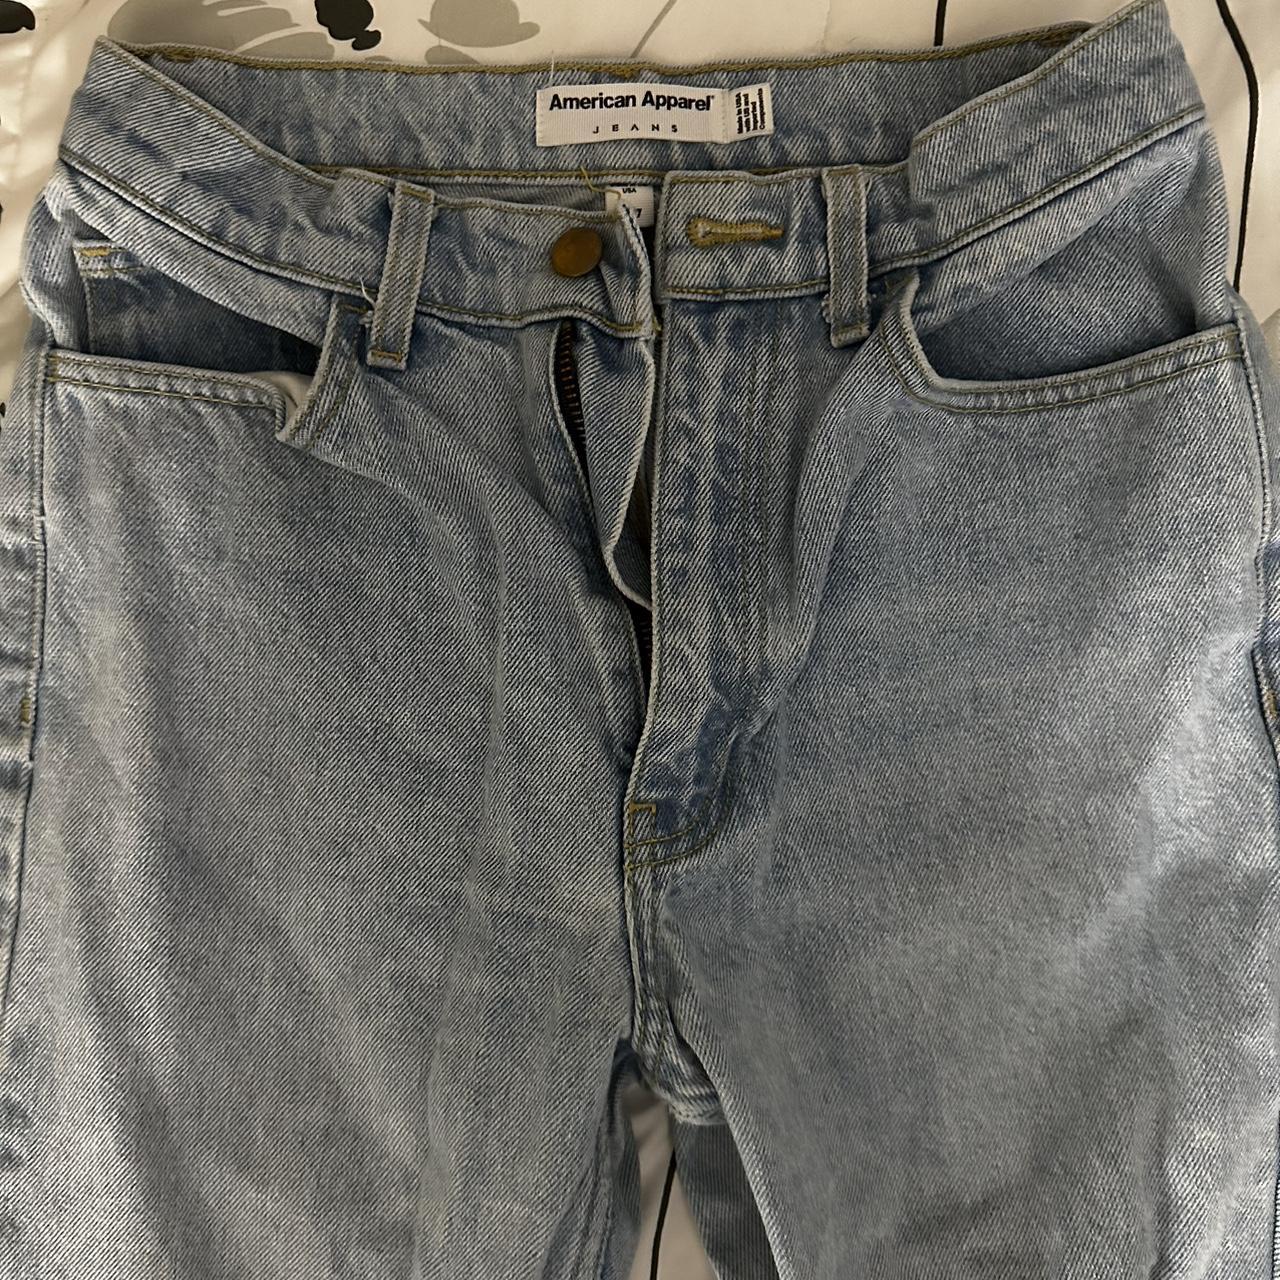 American Apparel Women's Jeans (5)